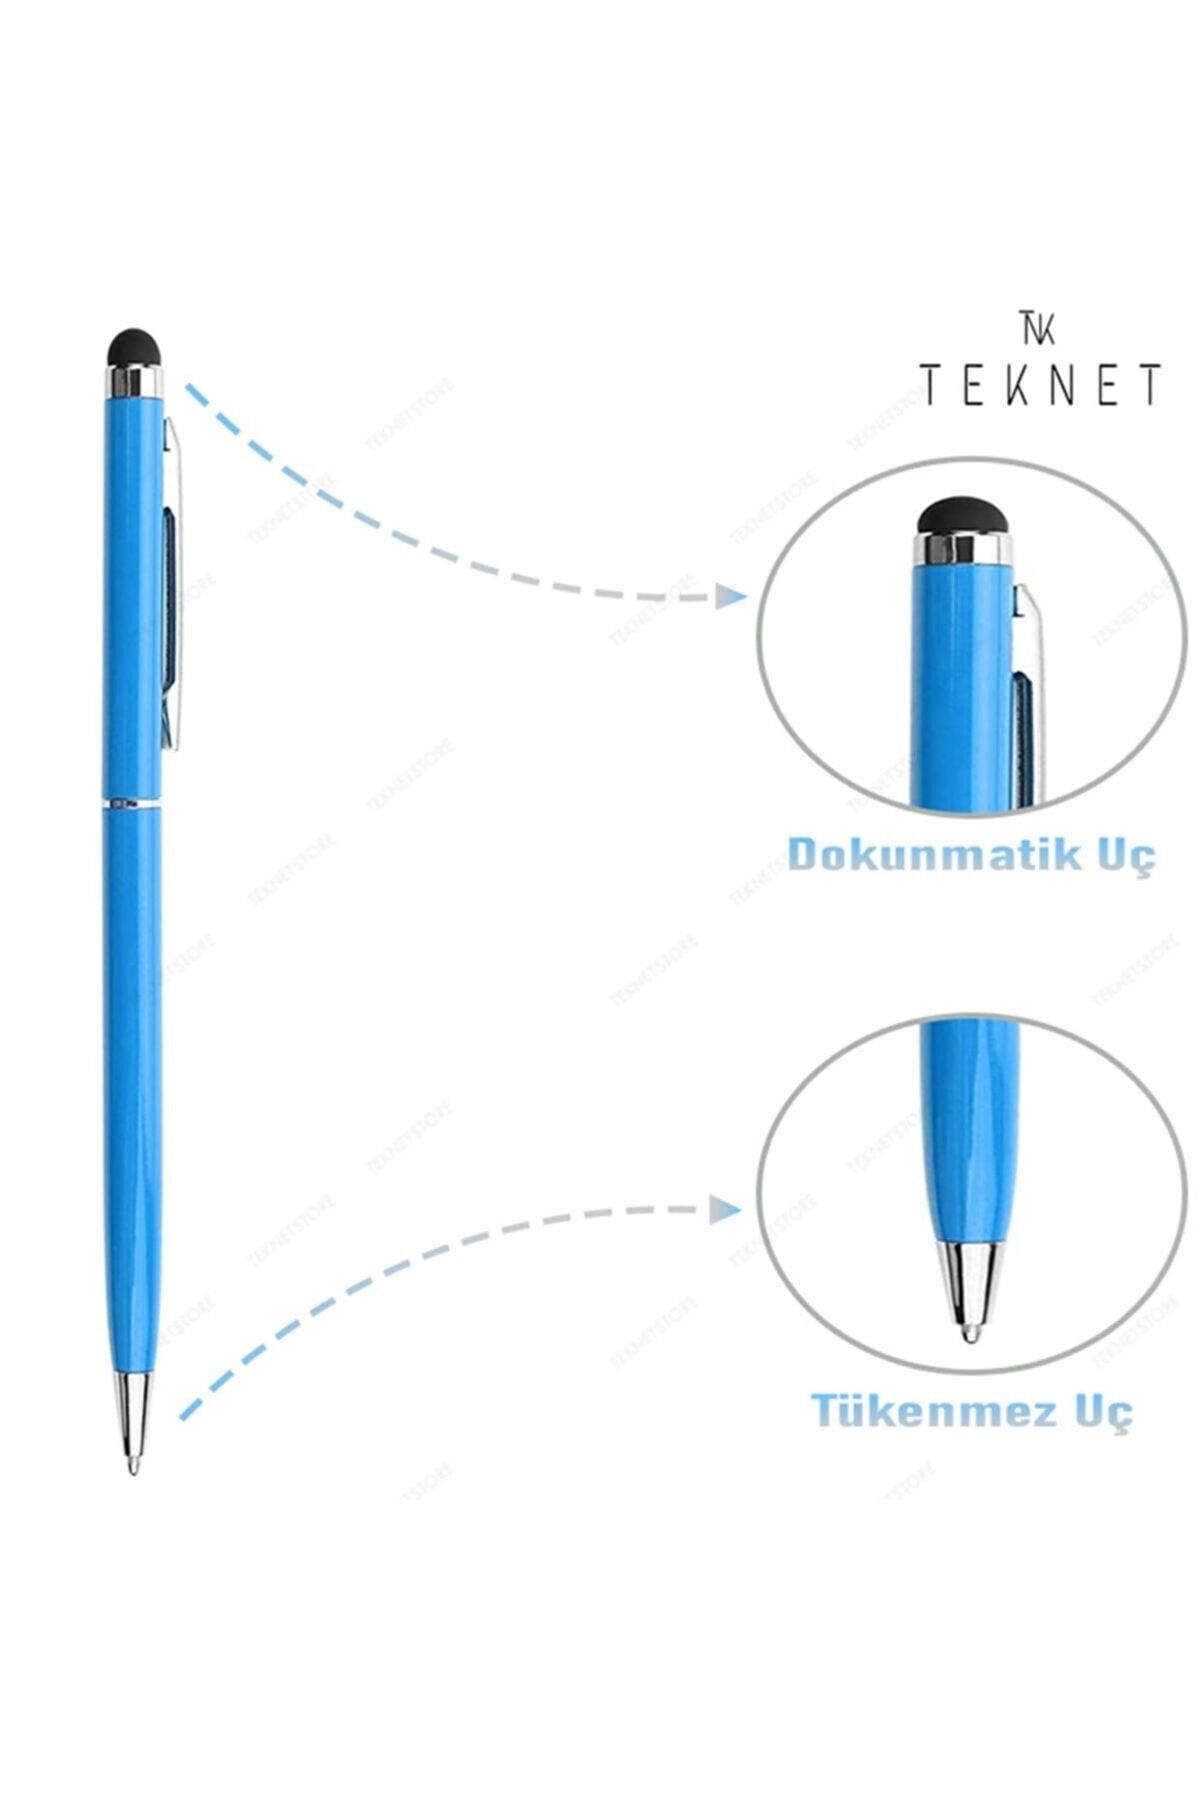 TEKNETSTORE Dokunmatik Kalem Tüm Cihazlara Uyumlu Tablet Telefon Için Çizim & Yazı Kalemi 2 In 1 Tükenmez Uçlu